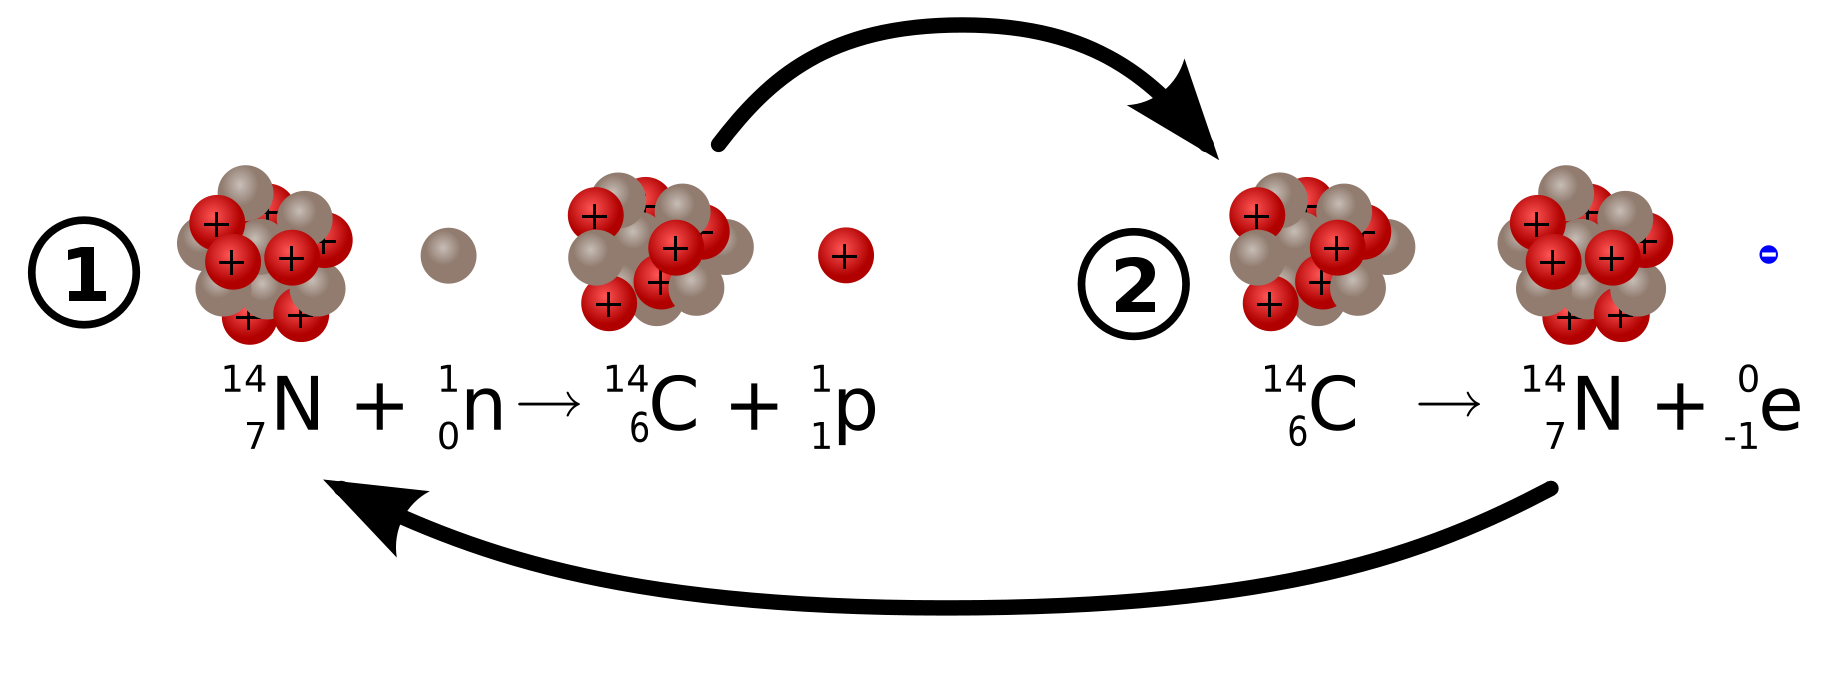 График радиоактивного распада углерода 14. Схема распада углерода 14. Схемы радиоактивного распада углерода 14. Изотоп углерода радиоактивный распад. Бета распад углерода.